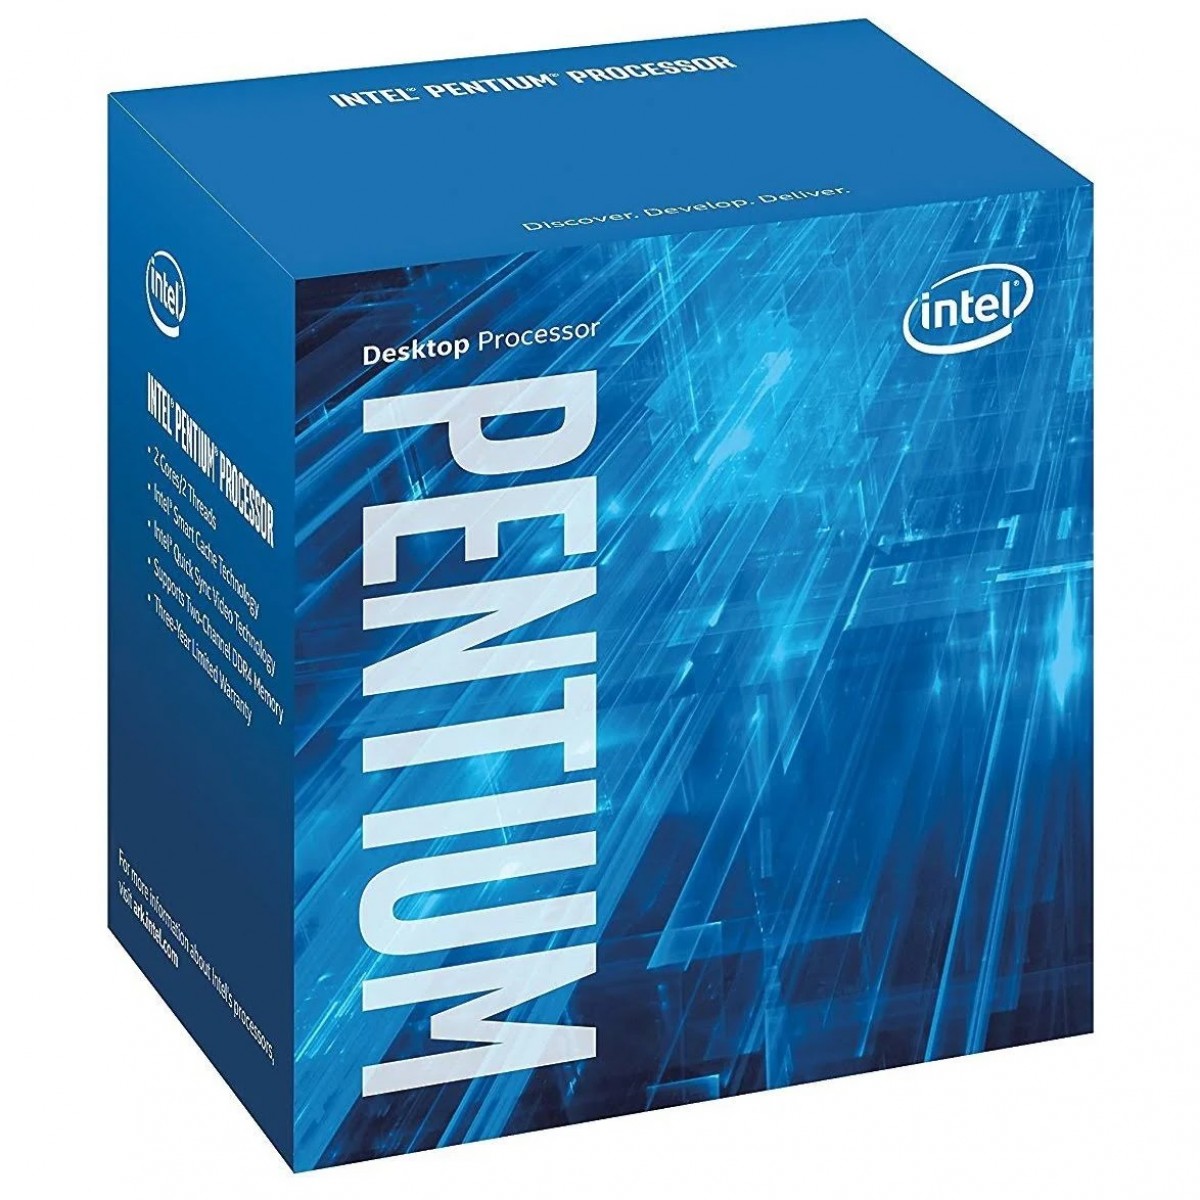 Processador Intel Pentium G4600 3.6GHz 3MB BX80677G4600 7ª GERAÇÃO Kaby Lake LGA 1151 (Melhor que o G4560)